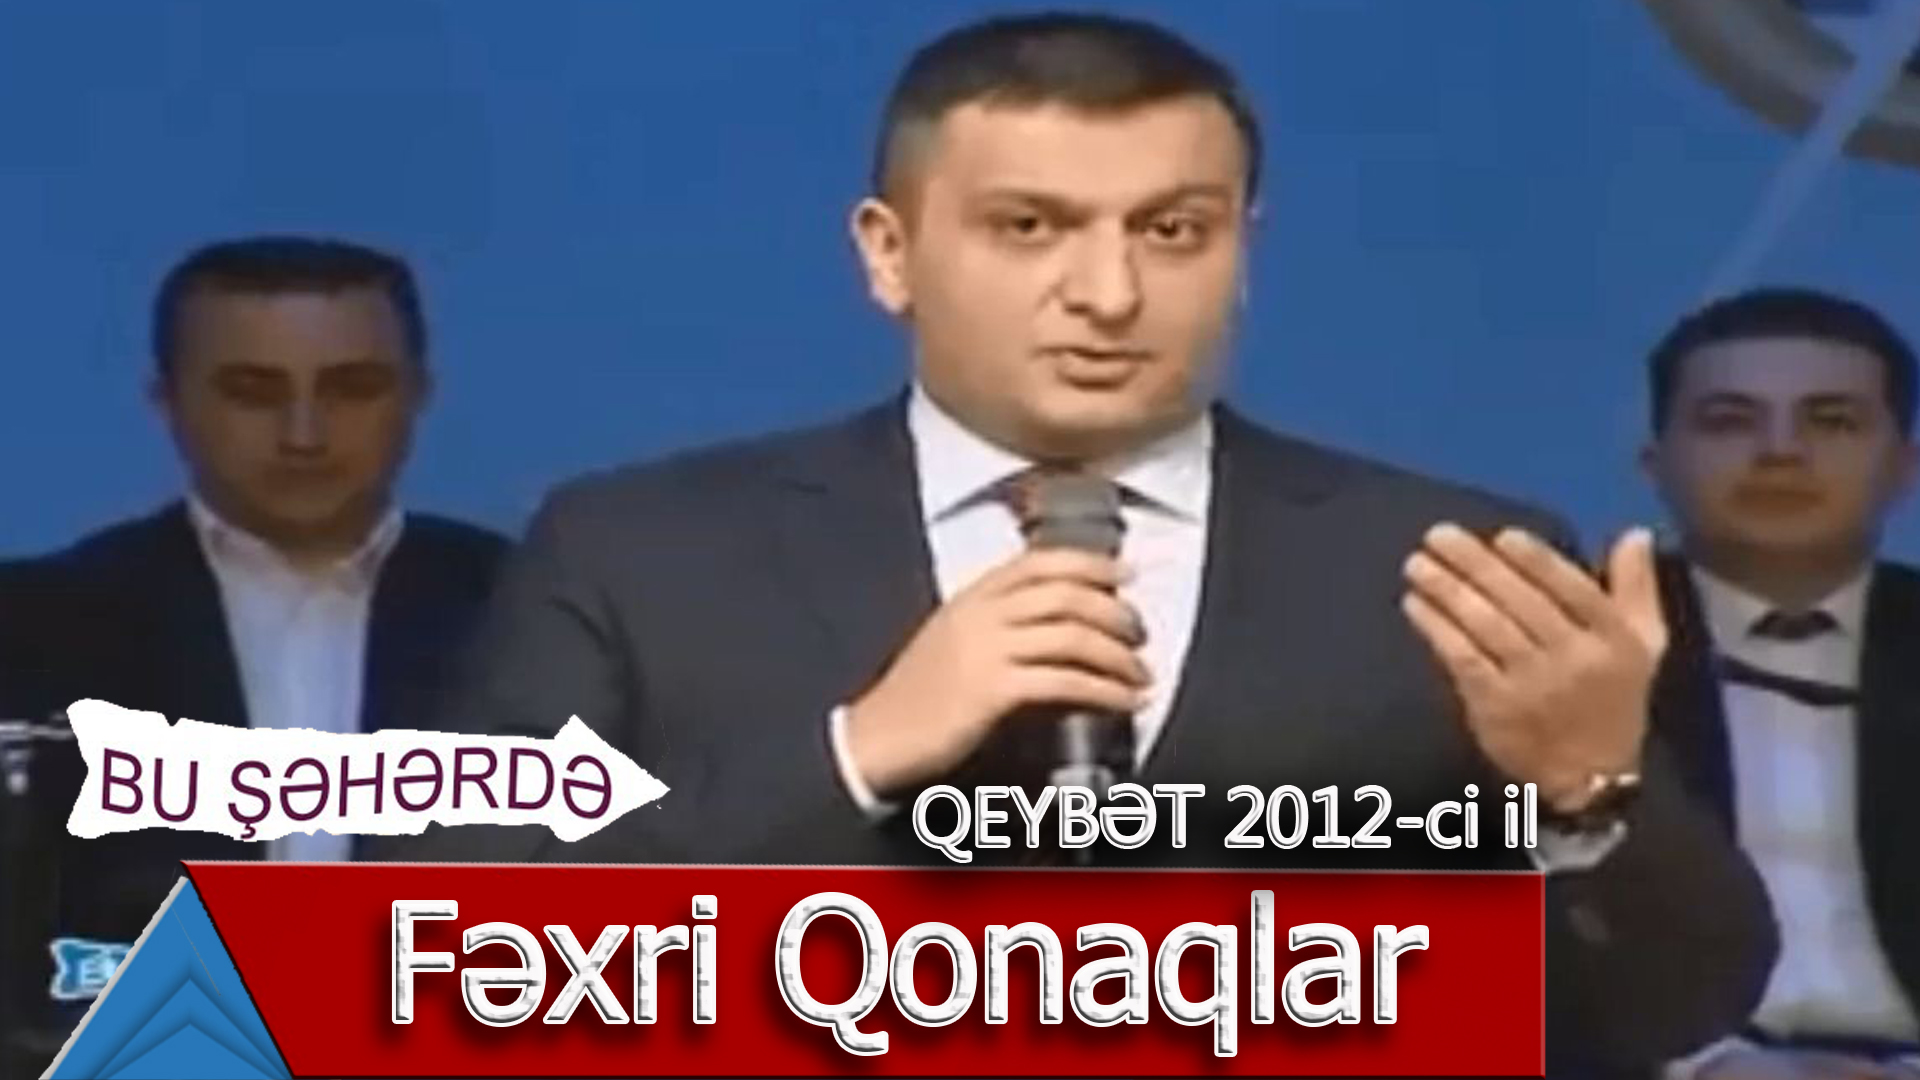 Bu Şəhərdə - Fəxri Qonaqlar (Qeybət konserti, 2012)